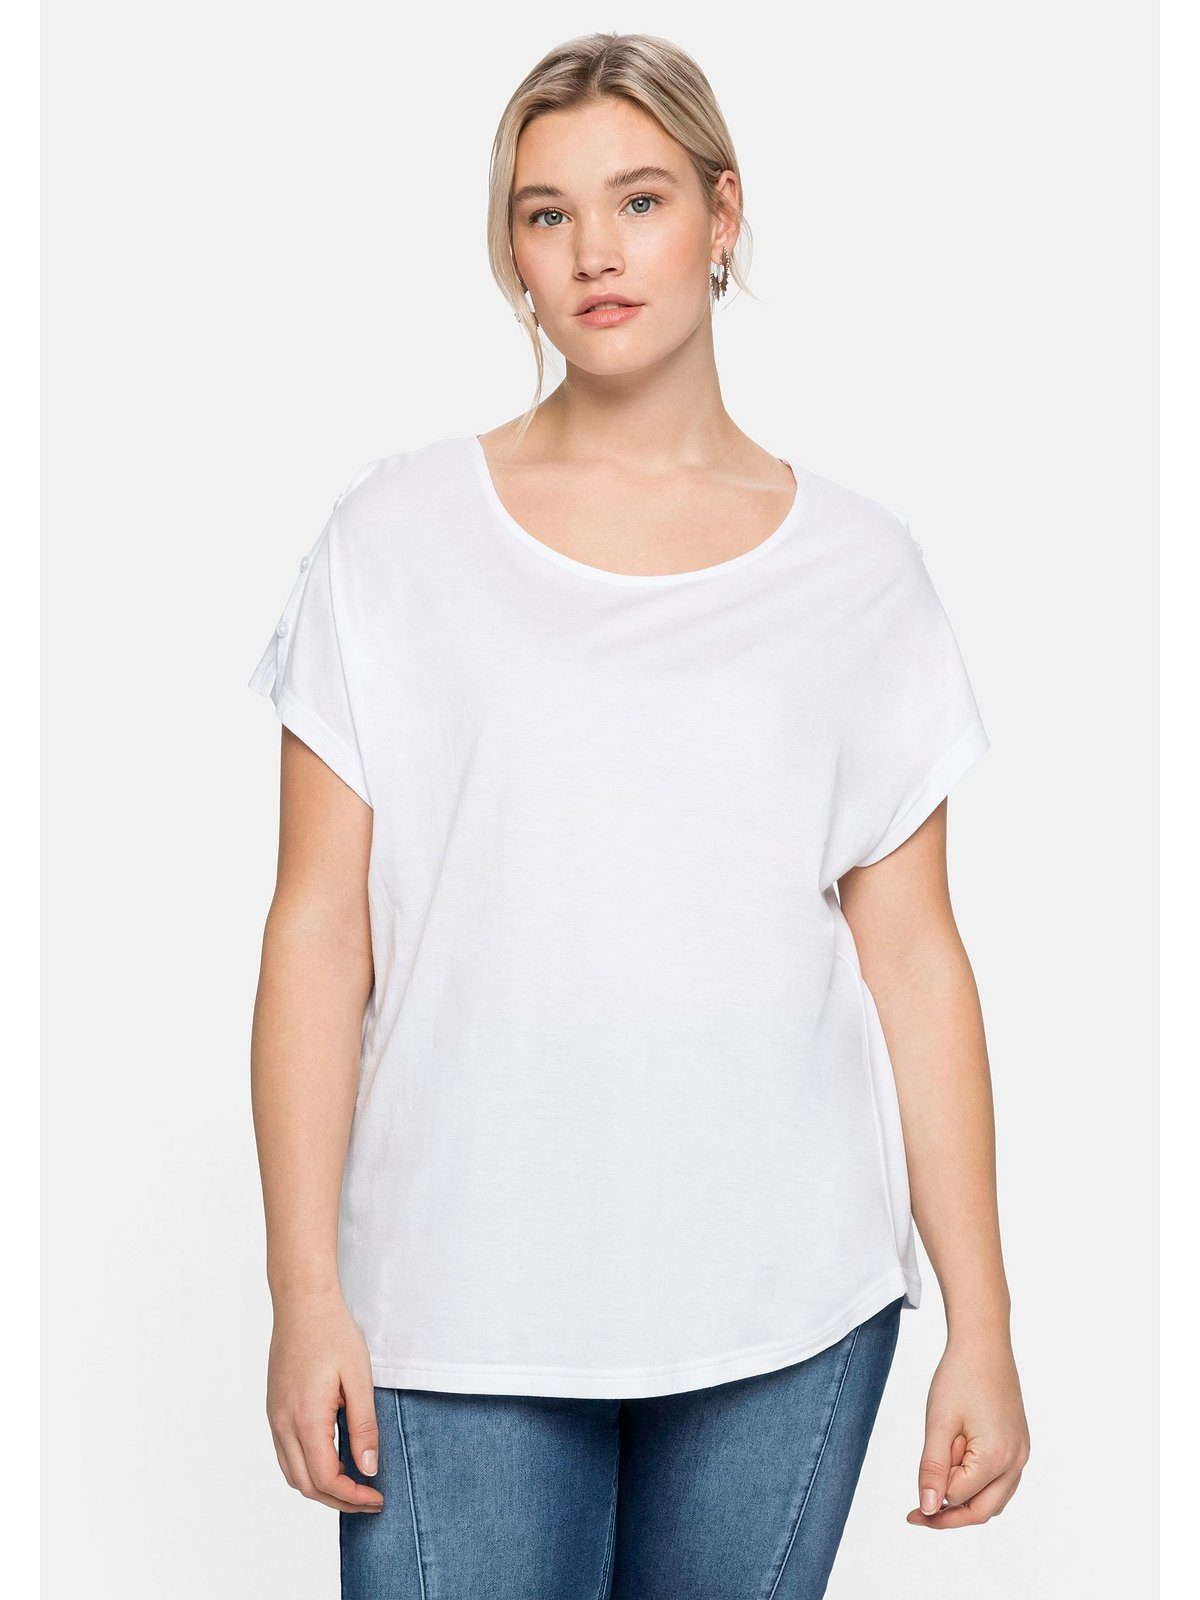 Sheego T-Shirt Große Größen mit offener Schulterpartie, in leichter A-Linie weiß